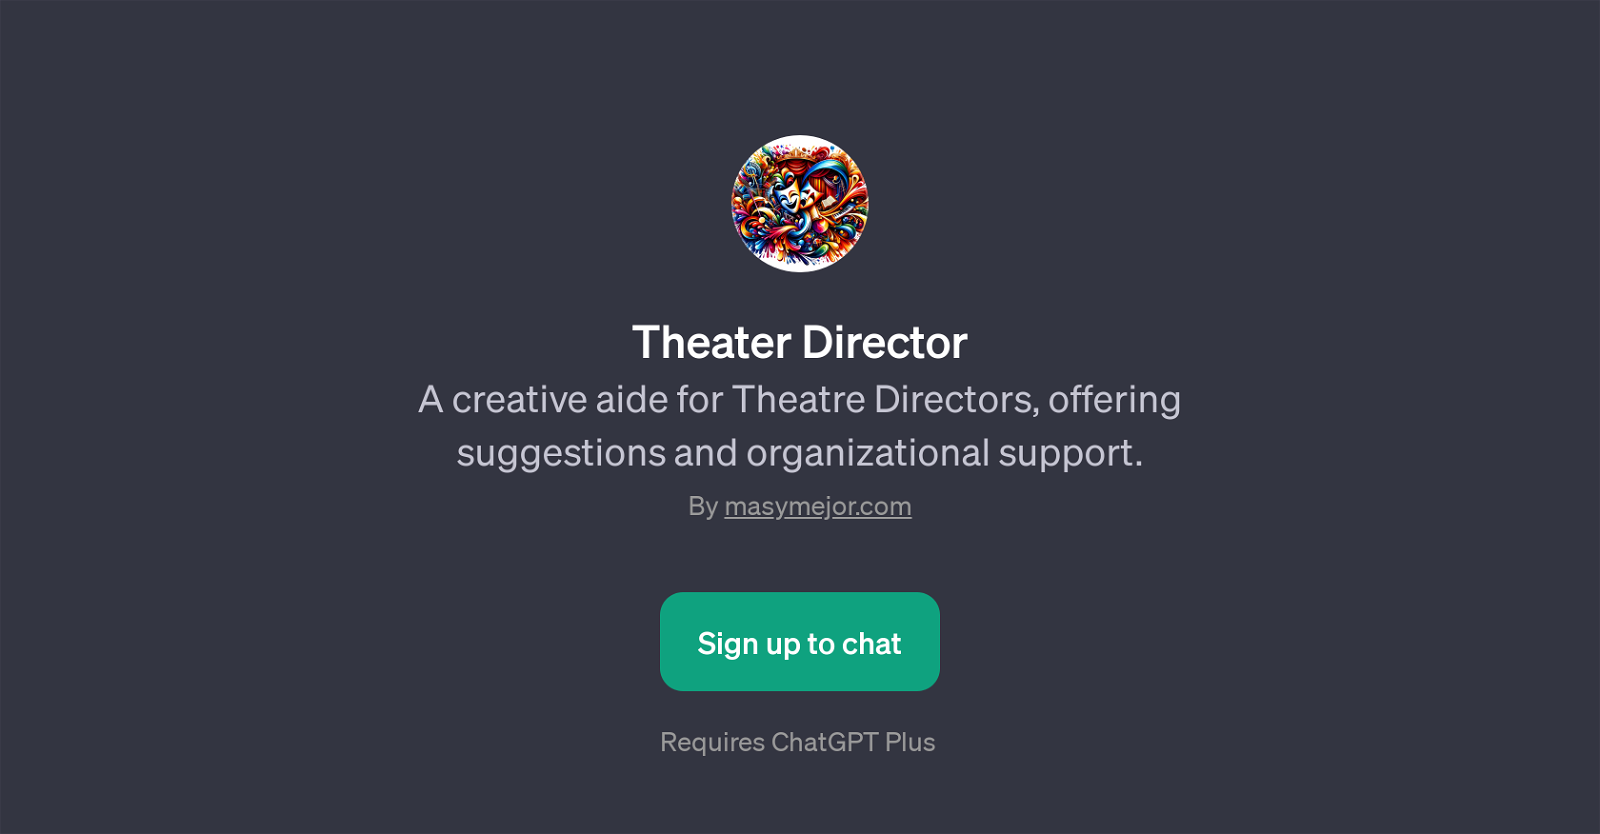 Theater Director website